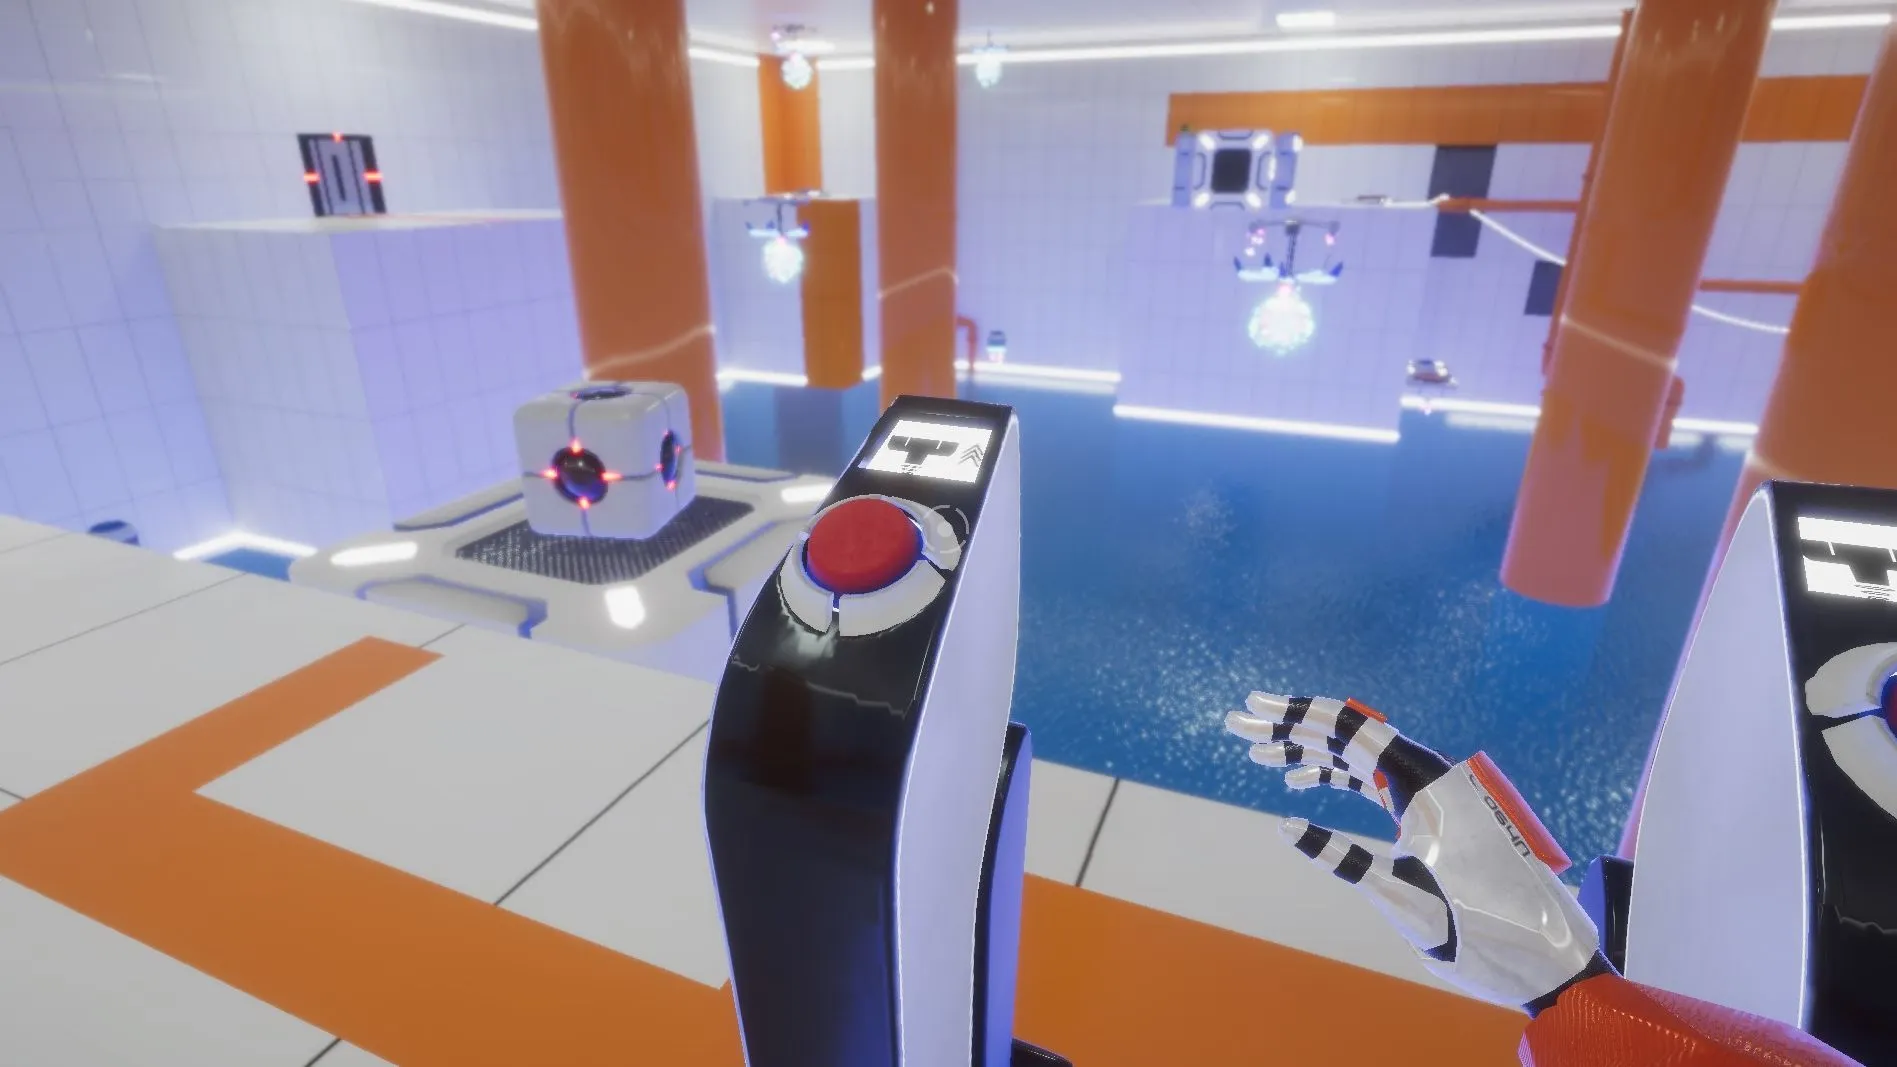 Sala del videojuego con un suelo lleno de agua y con un botón rojo para accionar